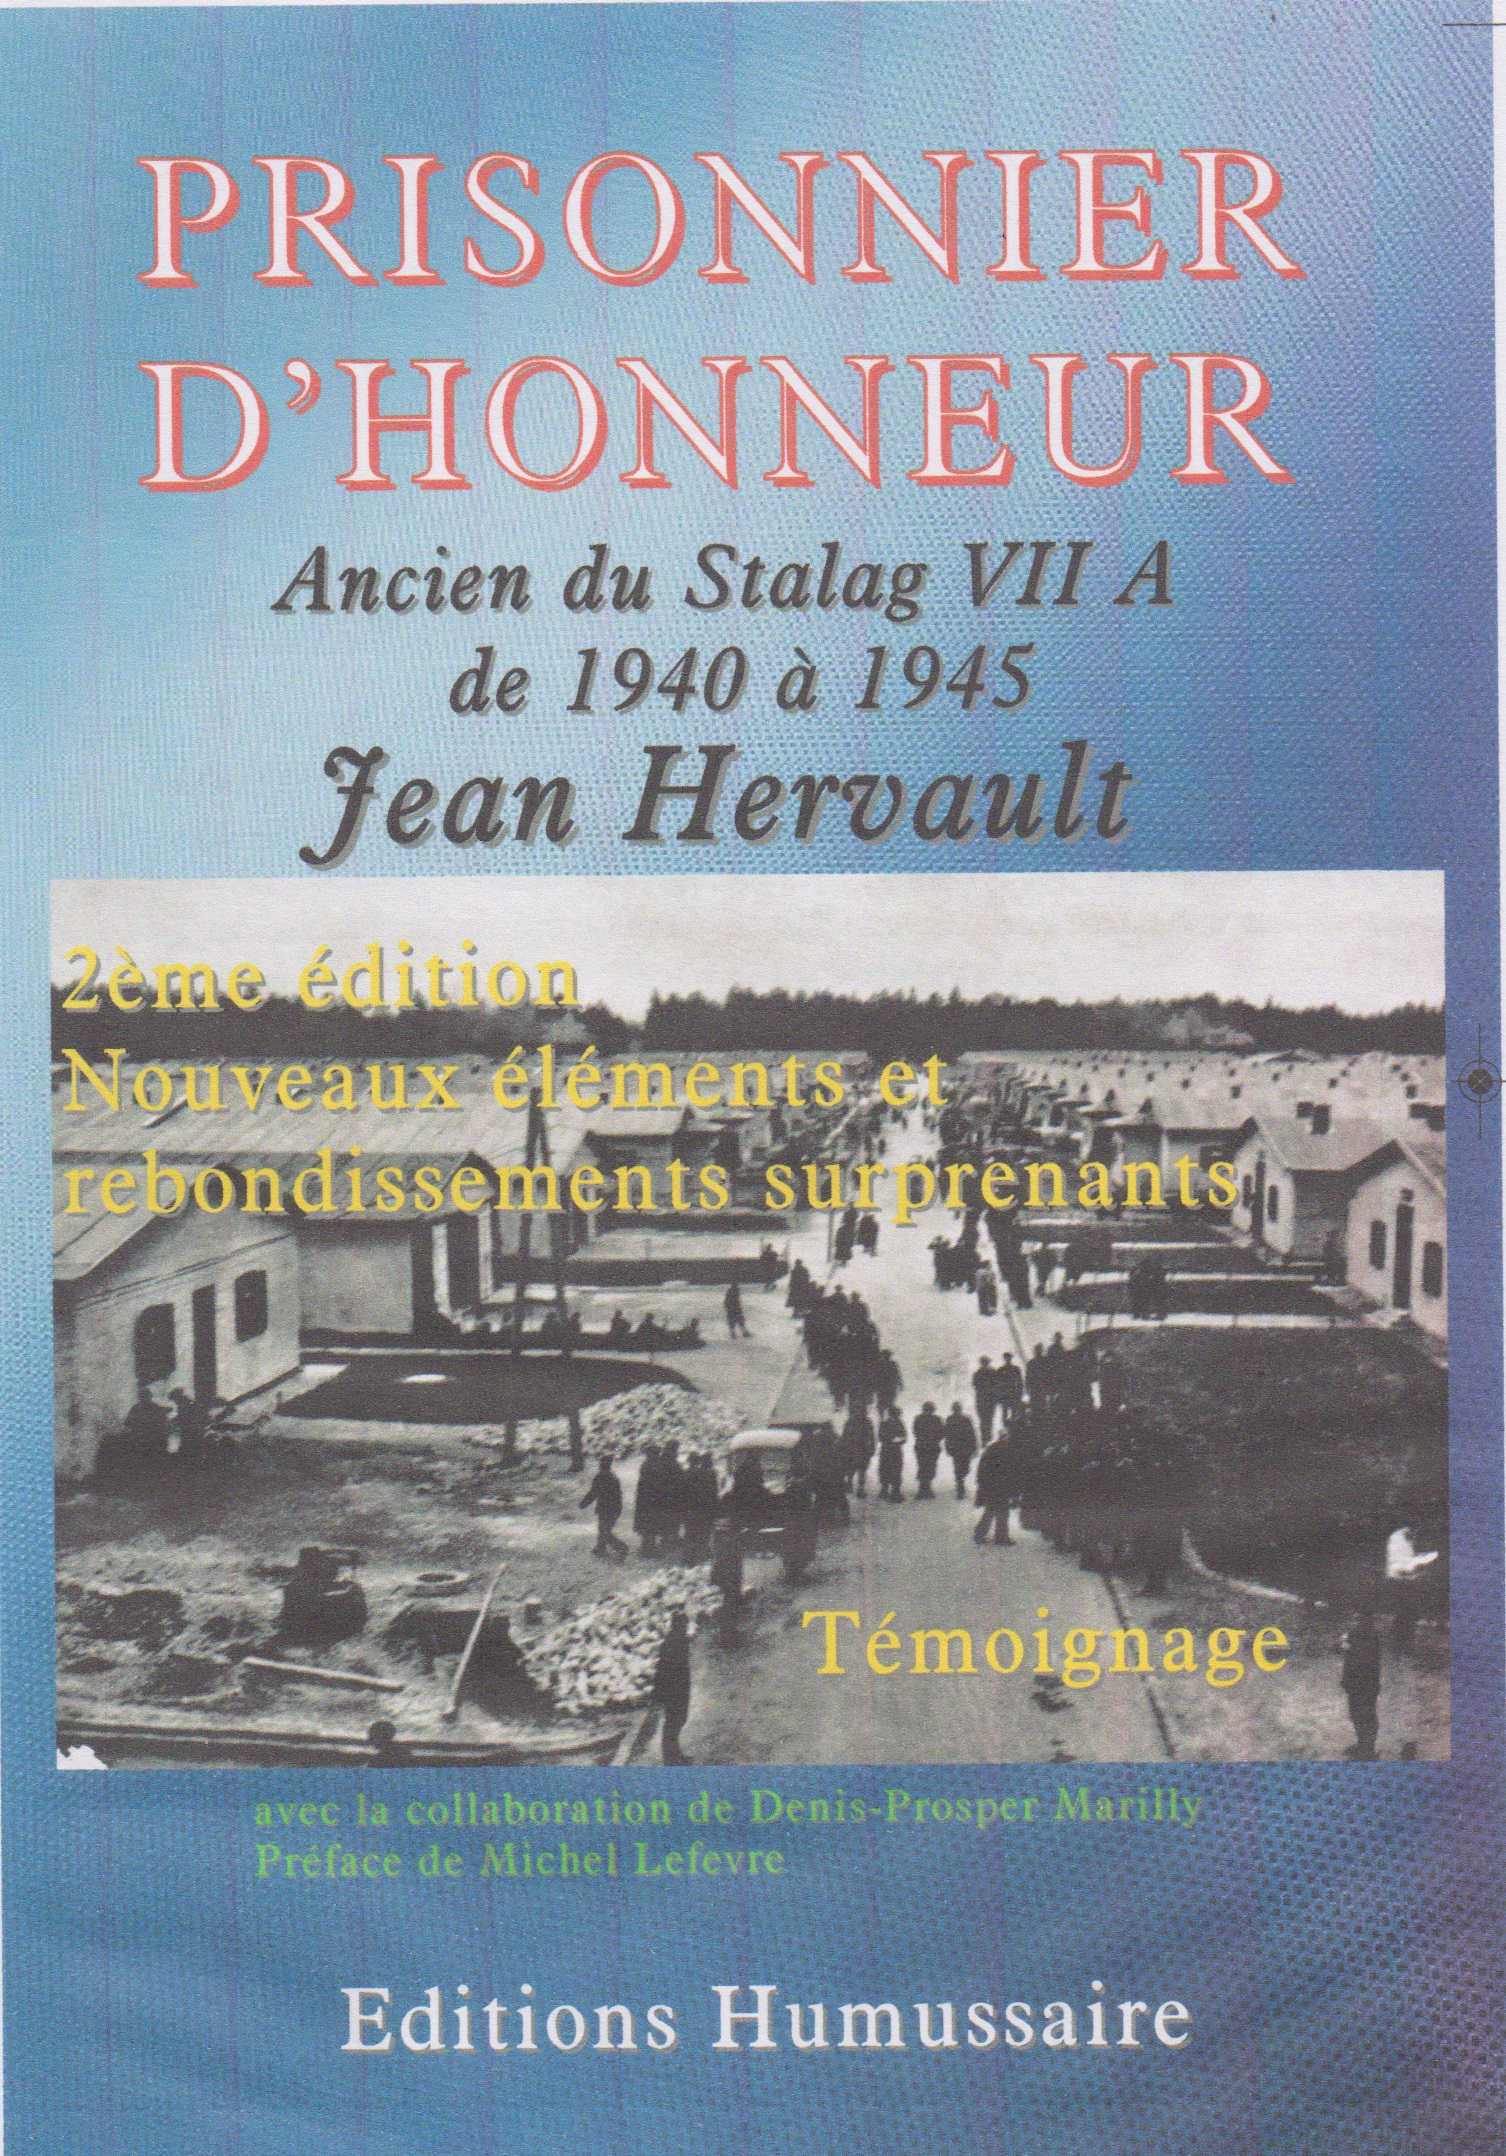 Prisonnier d'honneur - Ancien du Stalag VII A de 1940 à 1945  - Jean Hervault avec la collaboration de Denis-Prosper Marilly